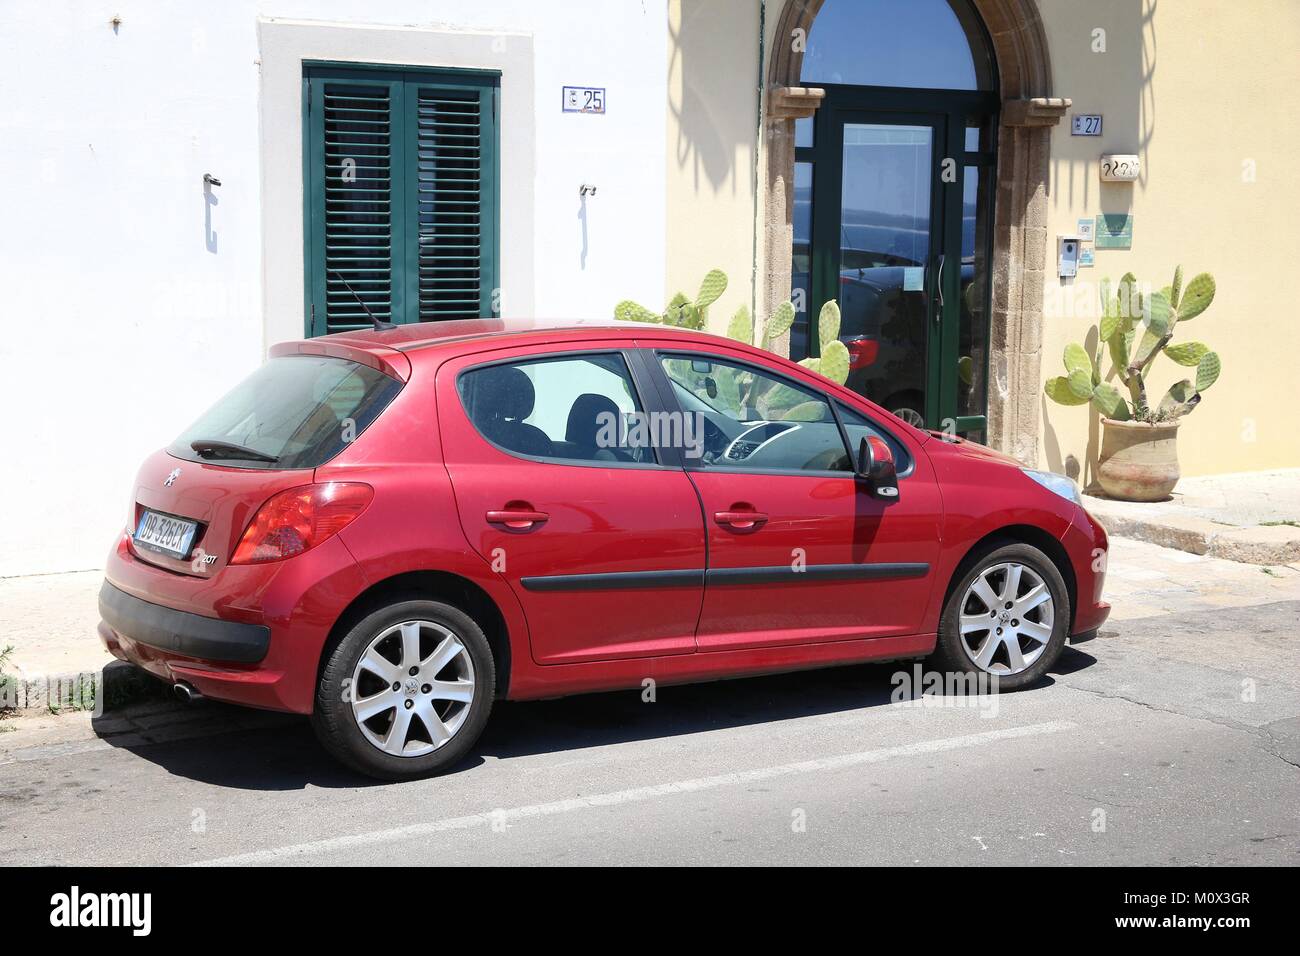 GALLIPOLI, Italia - 31 Maggio 2017: Peugeot 207 piccola berlina auto parcheggiate in Italia. Ci sono 41 milioni di veicoli a motore immatricolati in Italia. Foto Stock